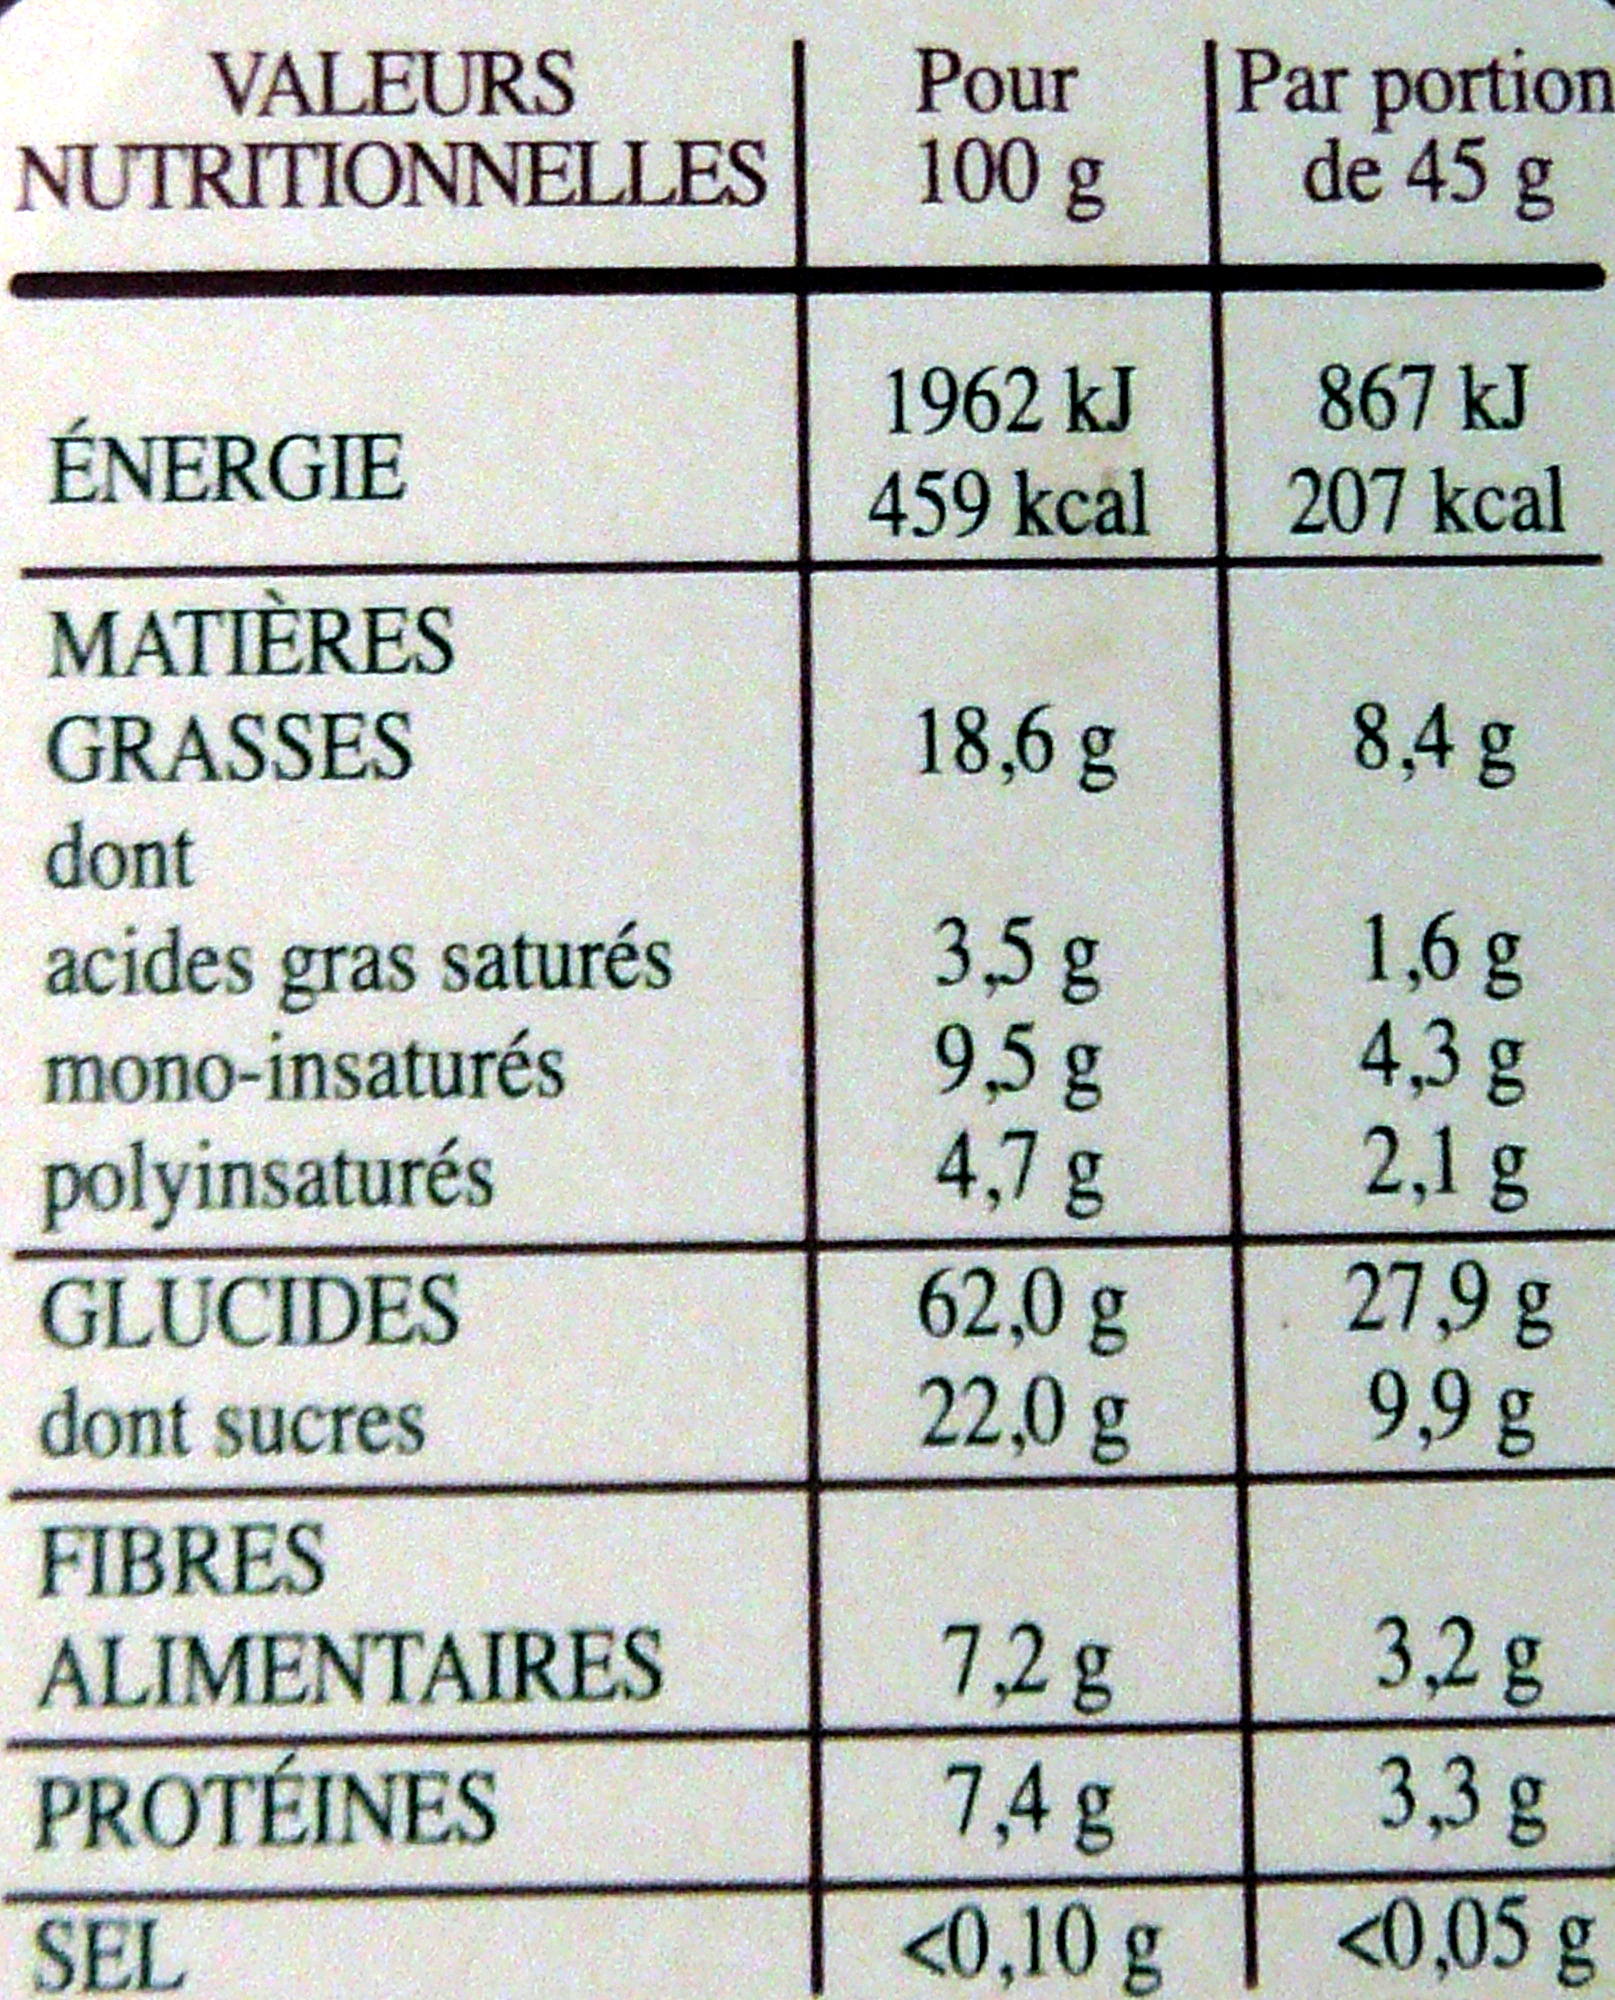 Country Crisp Sirop d'Erable & Noix de Pécan - Nutrition facts - fr